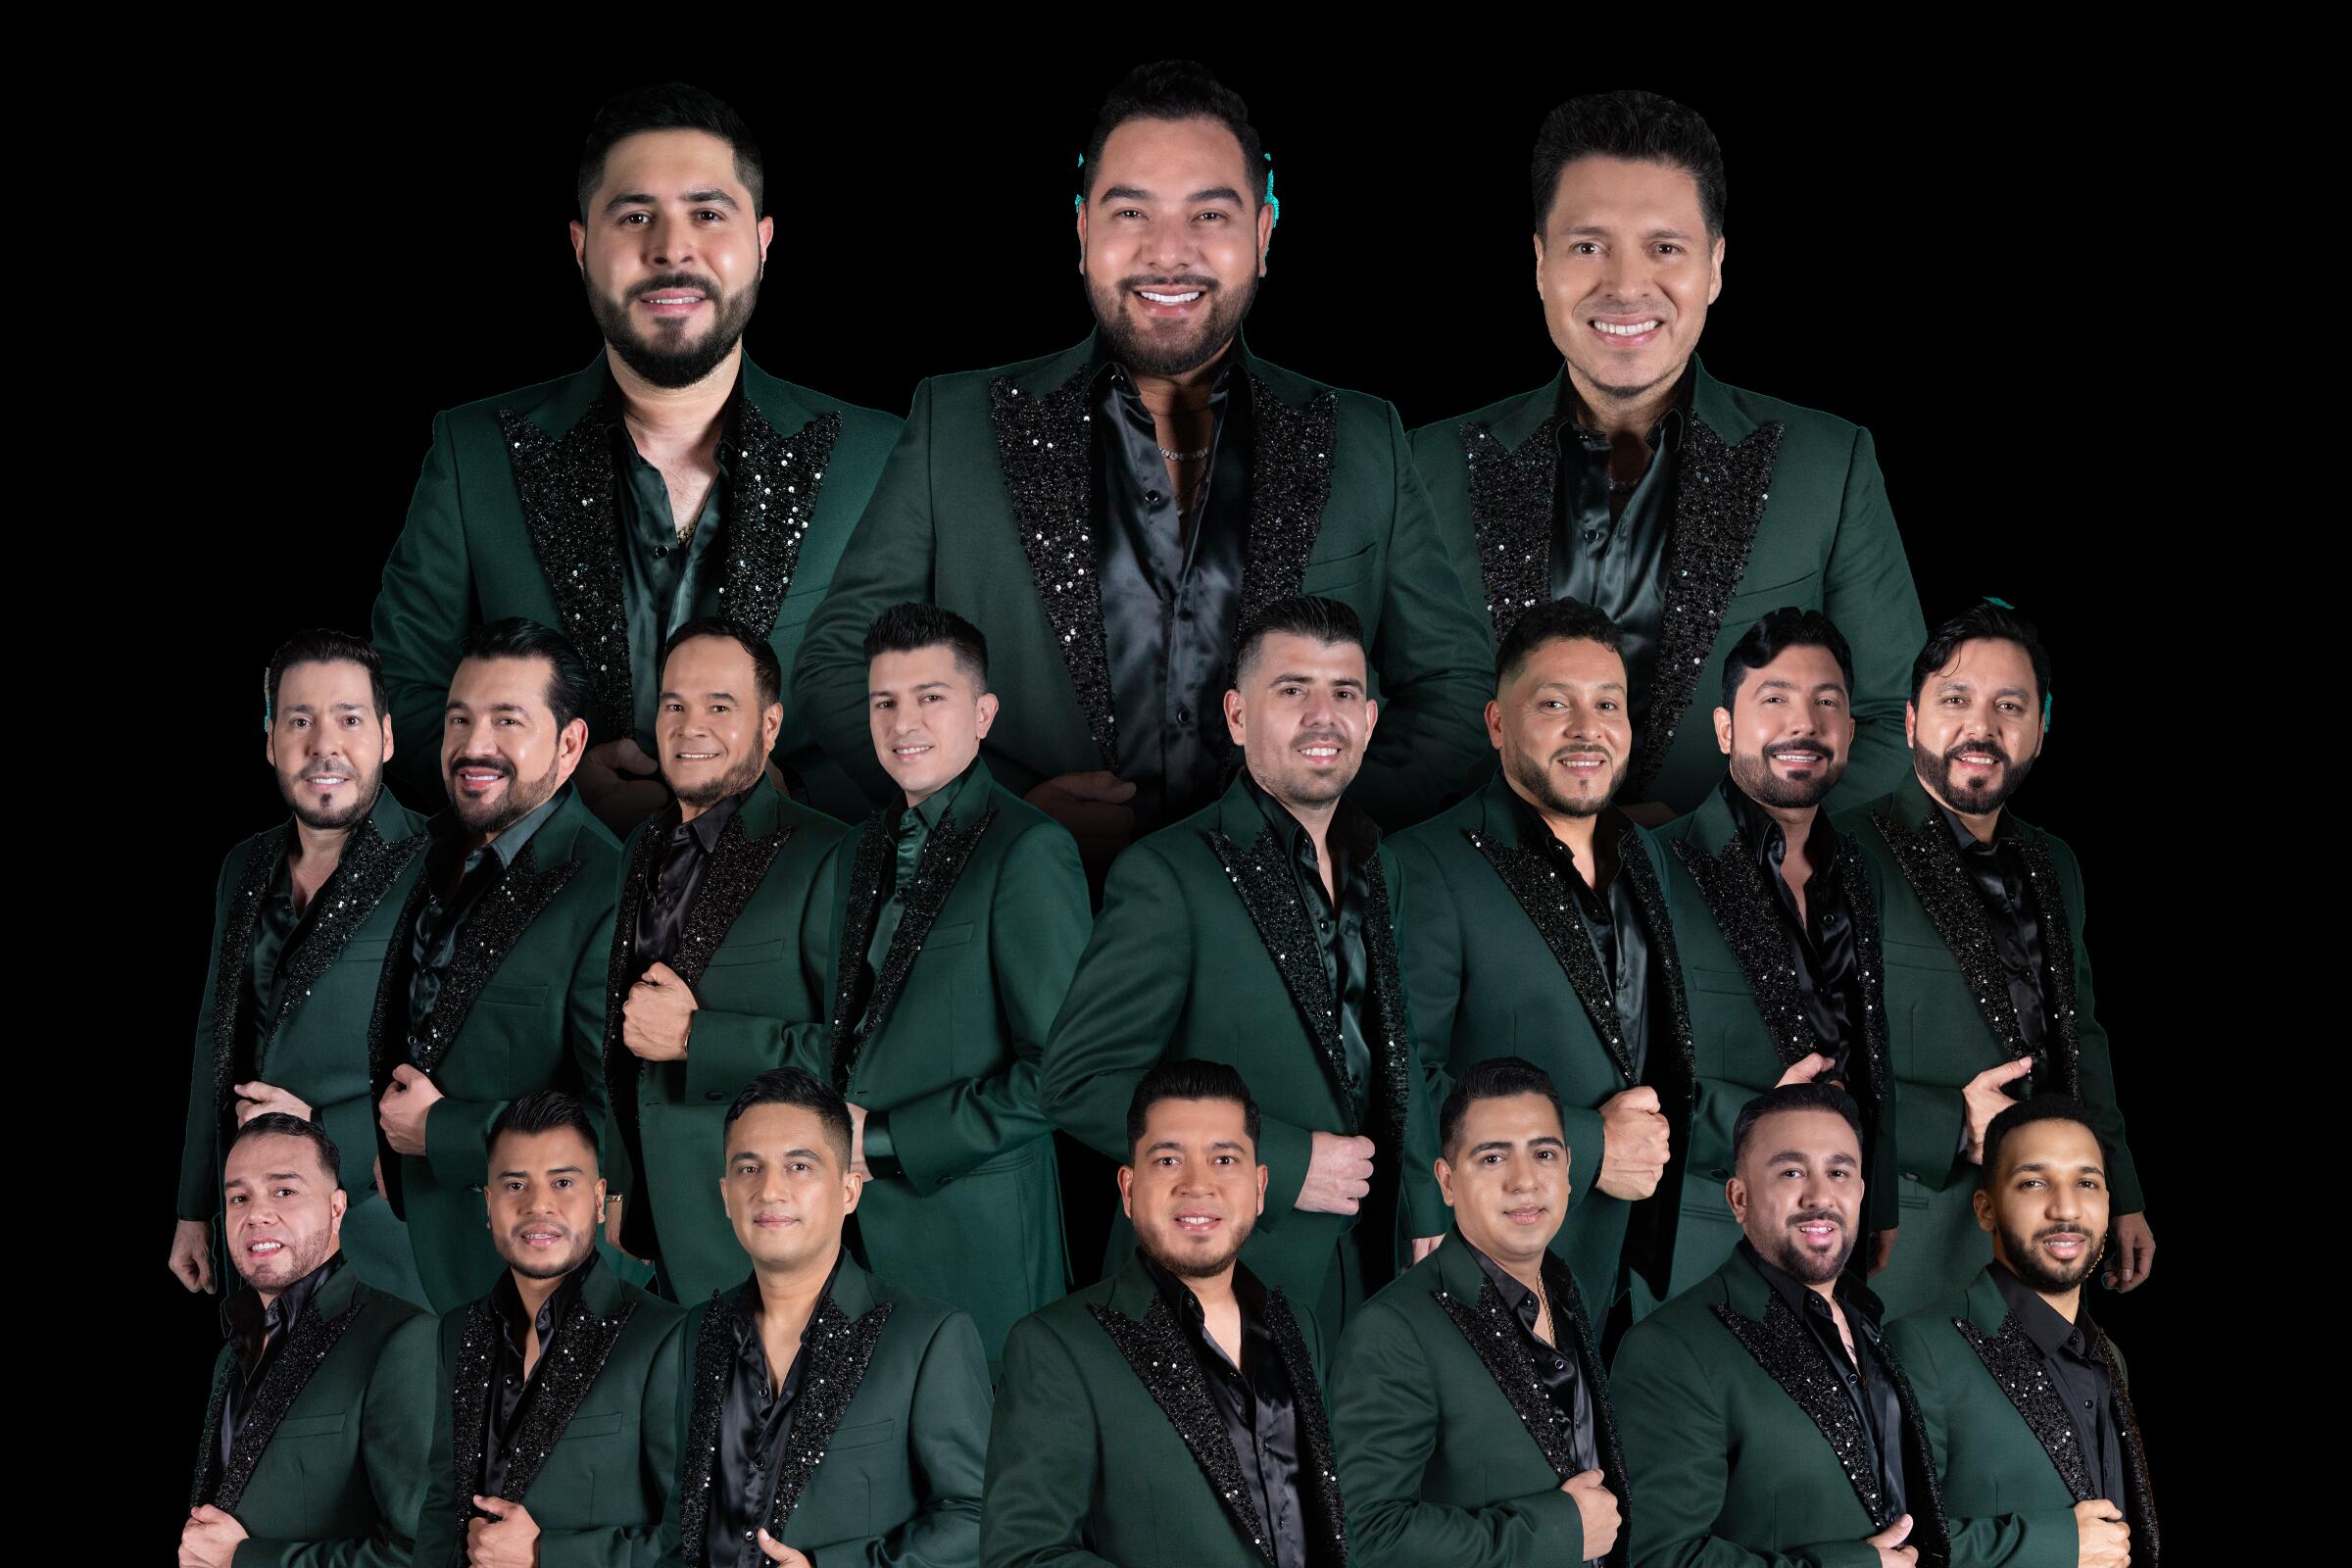 La legendaria Banda MS de Sergio Lizárraga recibirá wl Latin AMA Legacy de los Latin American Music Awards.